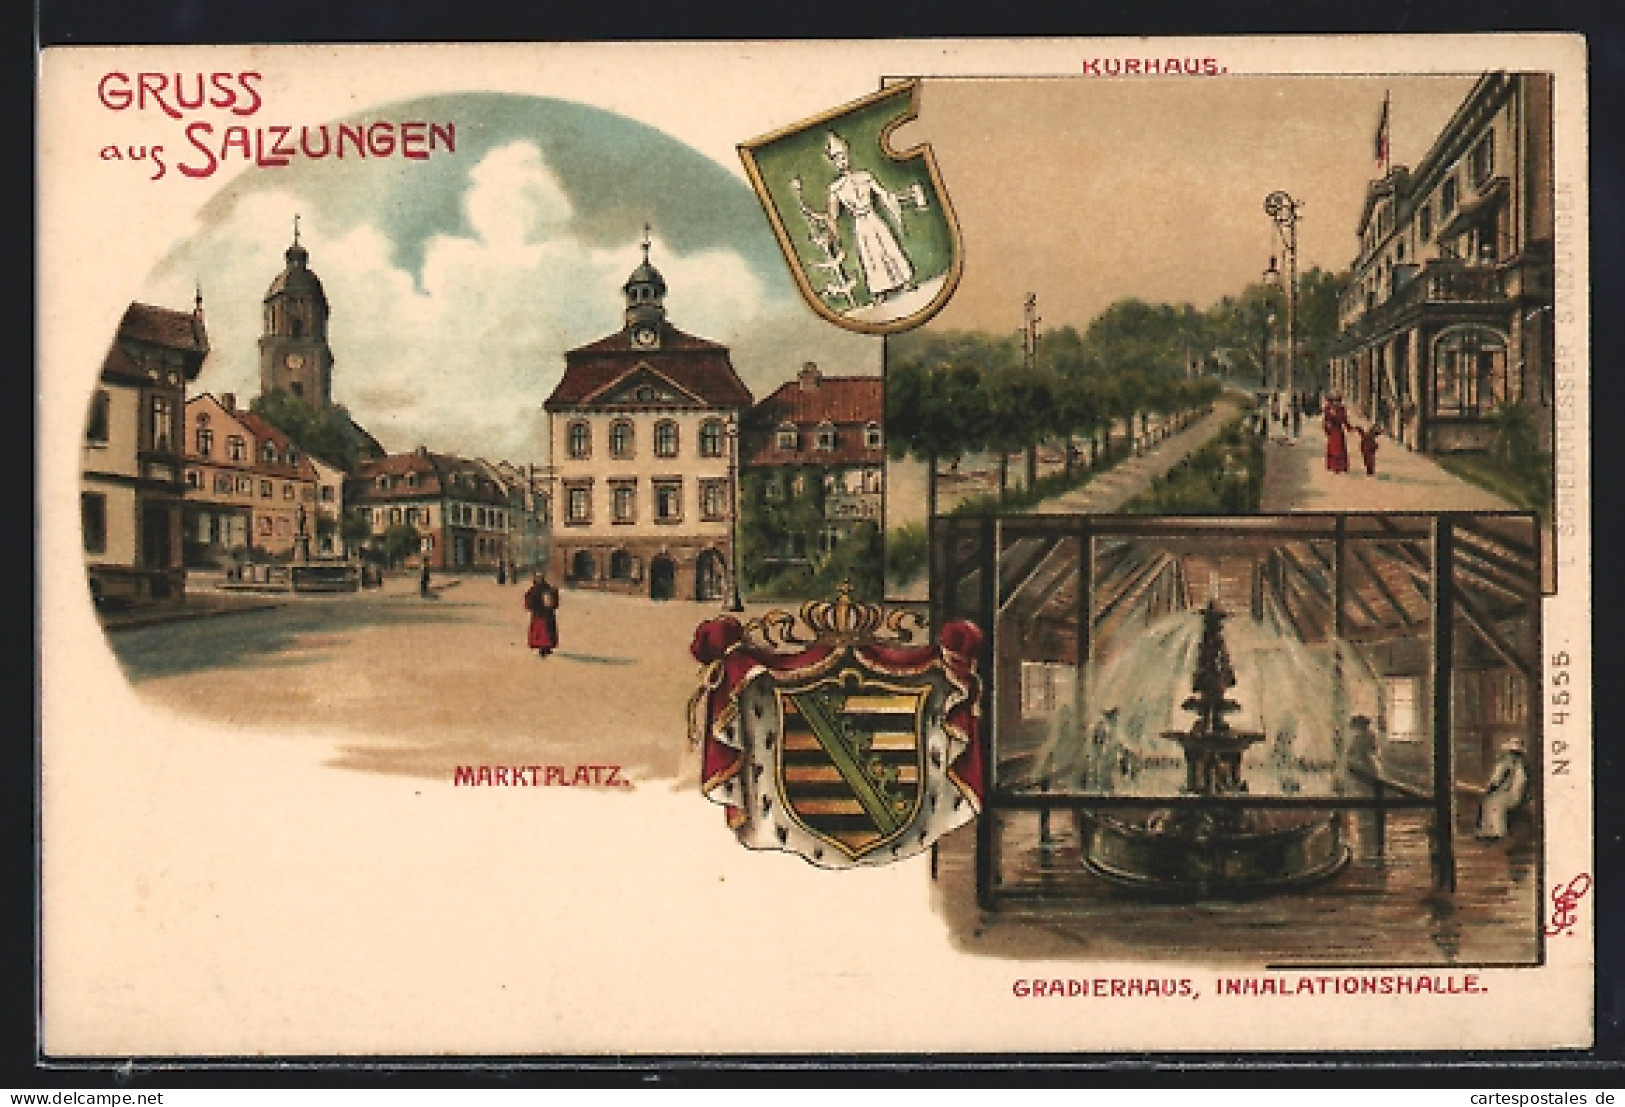 Lithographie Salzungen, Kurhaus, Gradierhaus, Marktplatz, Wappen  - Généalogie